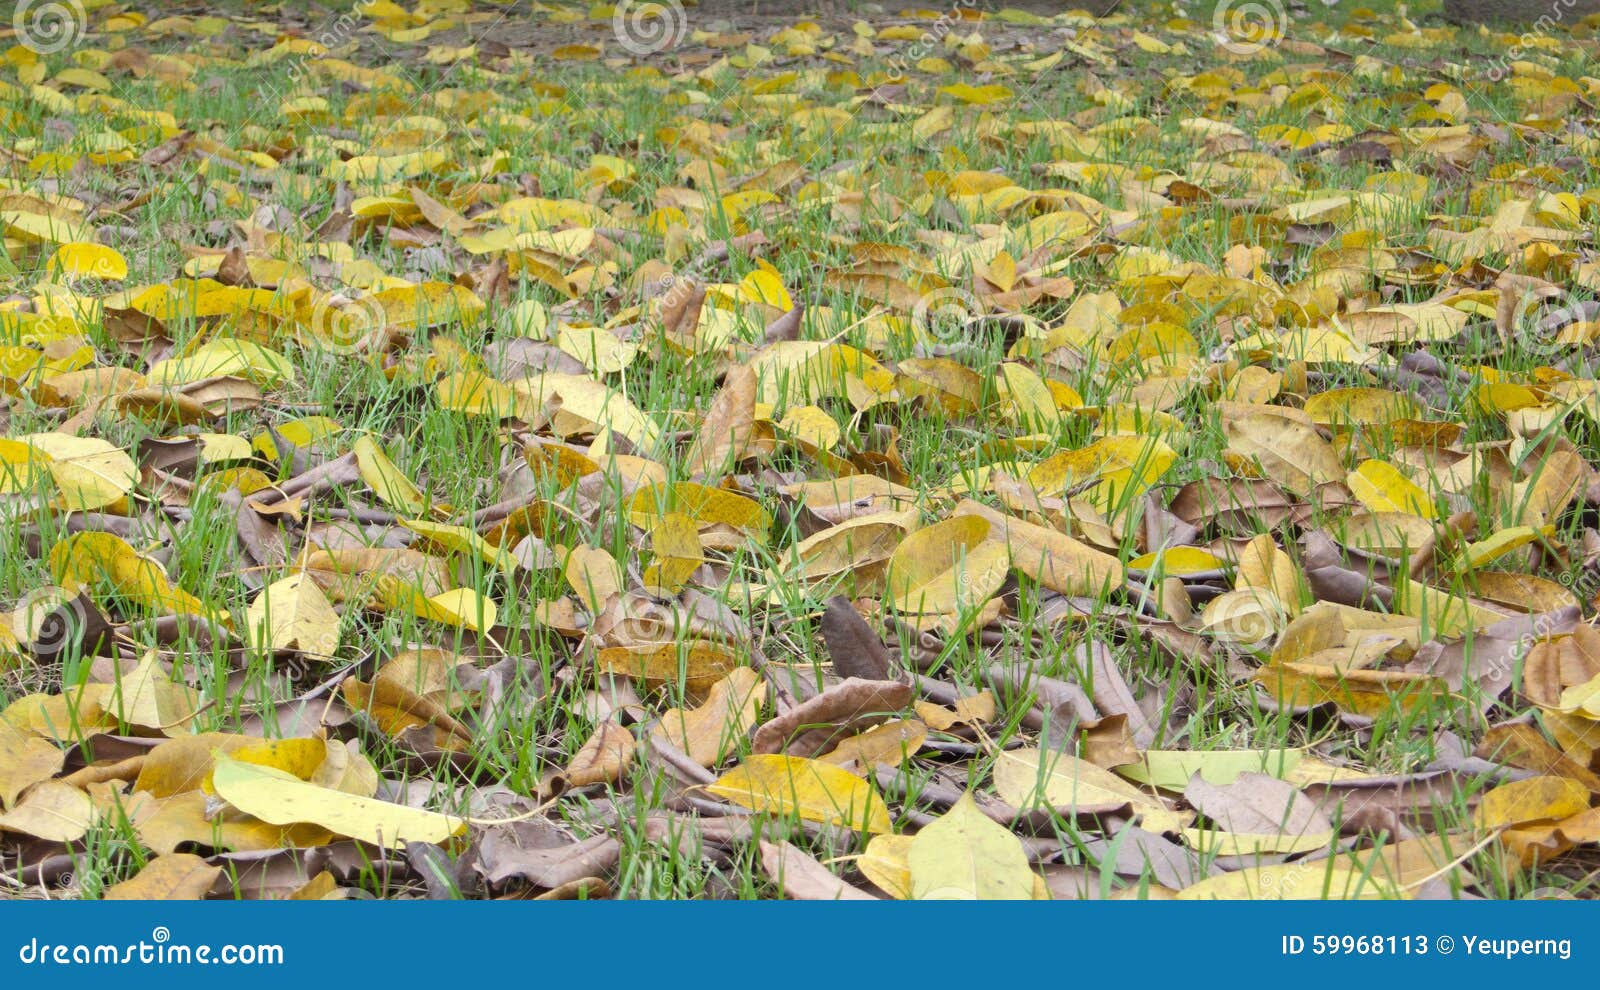 Trees with yellow leaves in fall, Islamorada FL